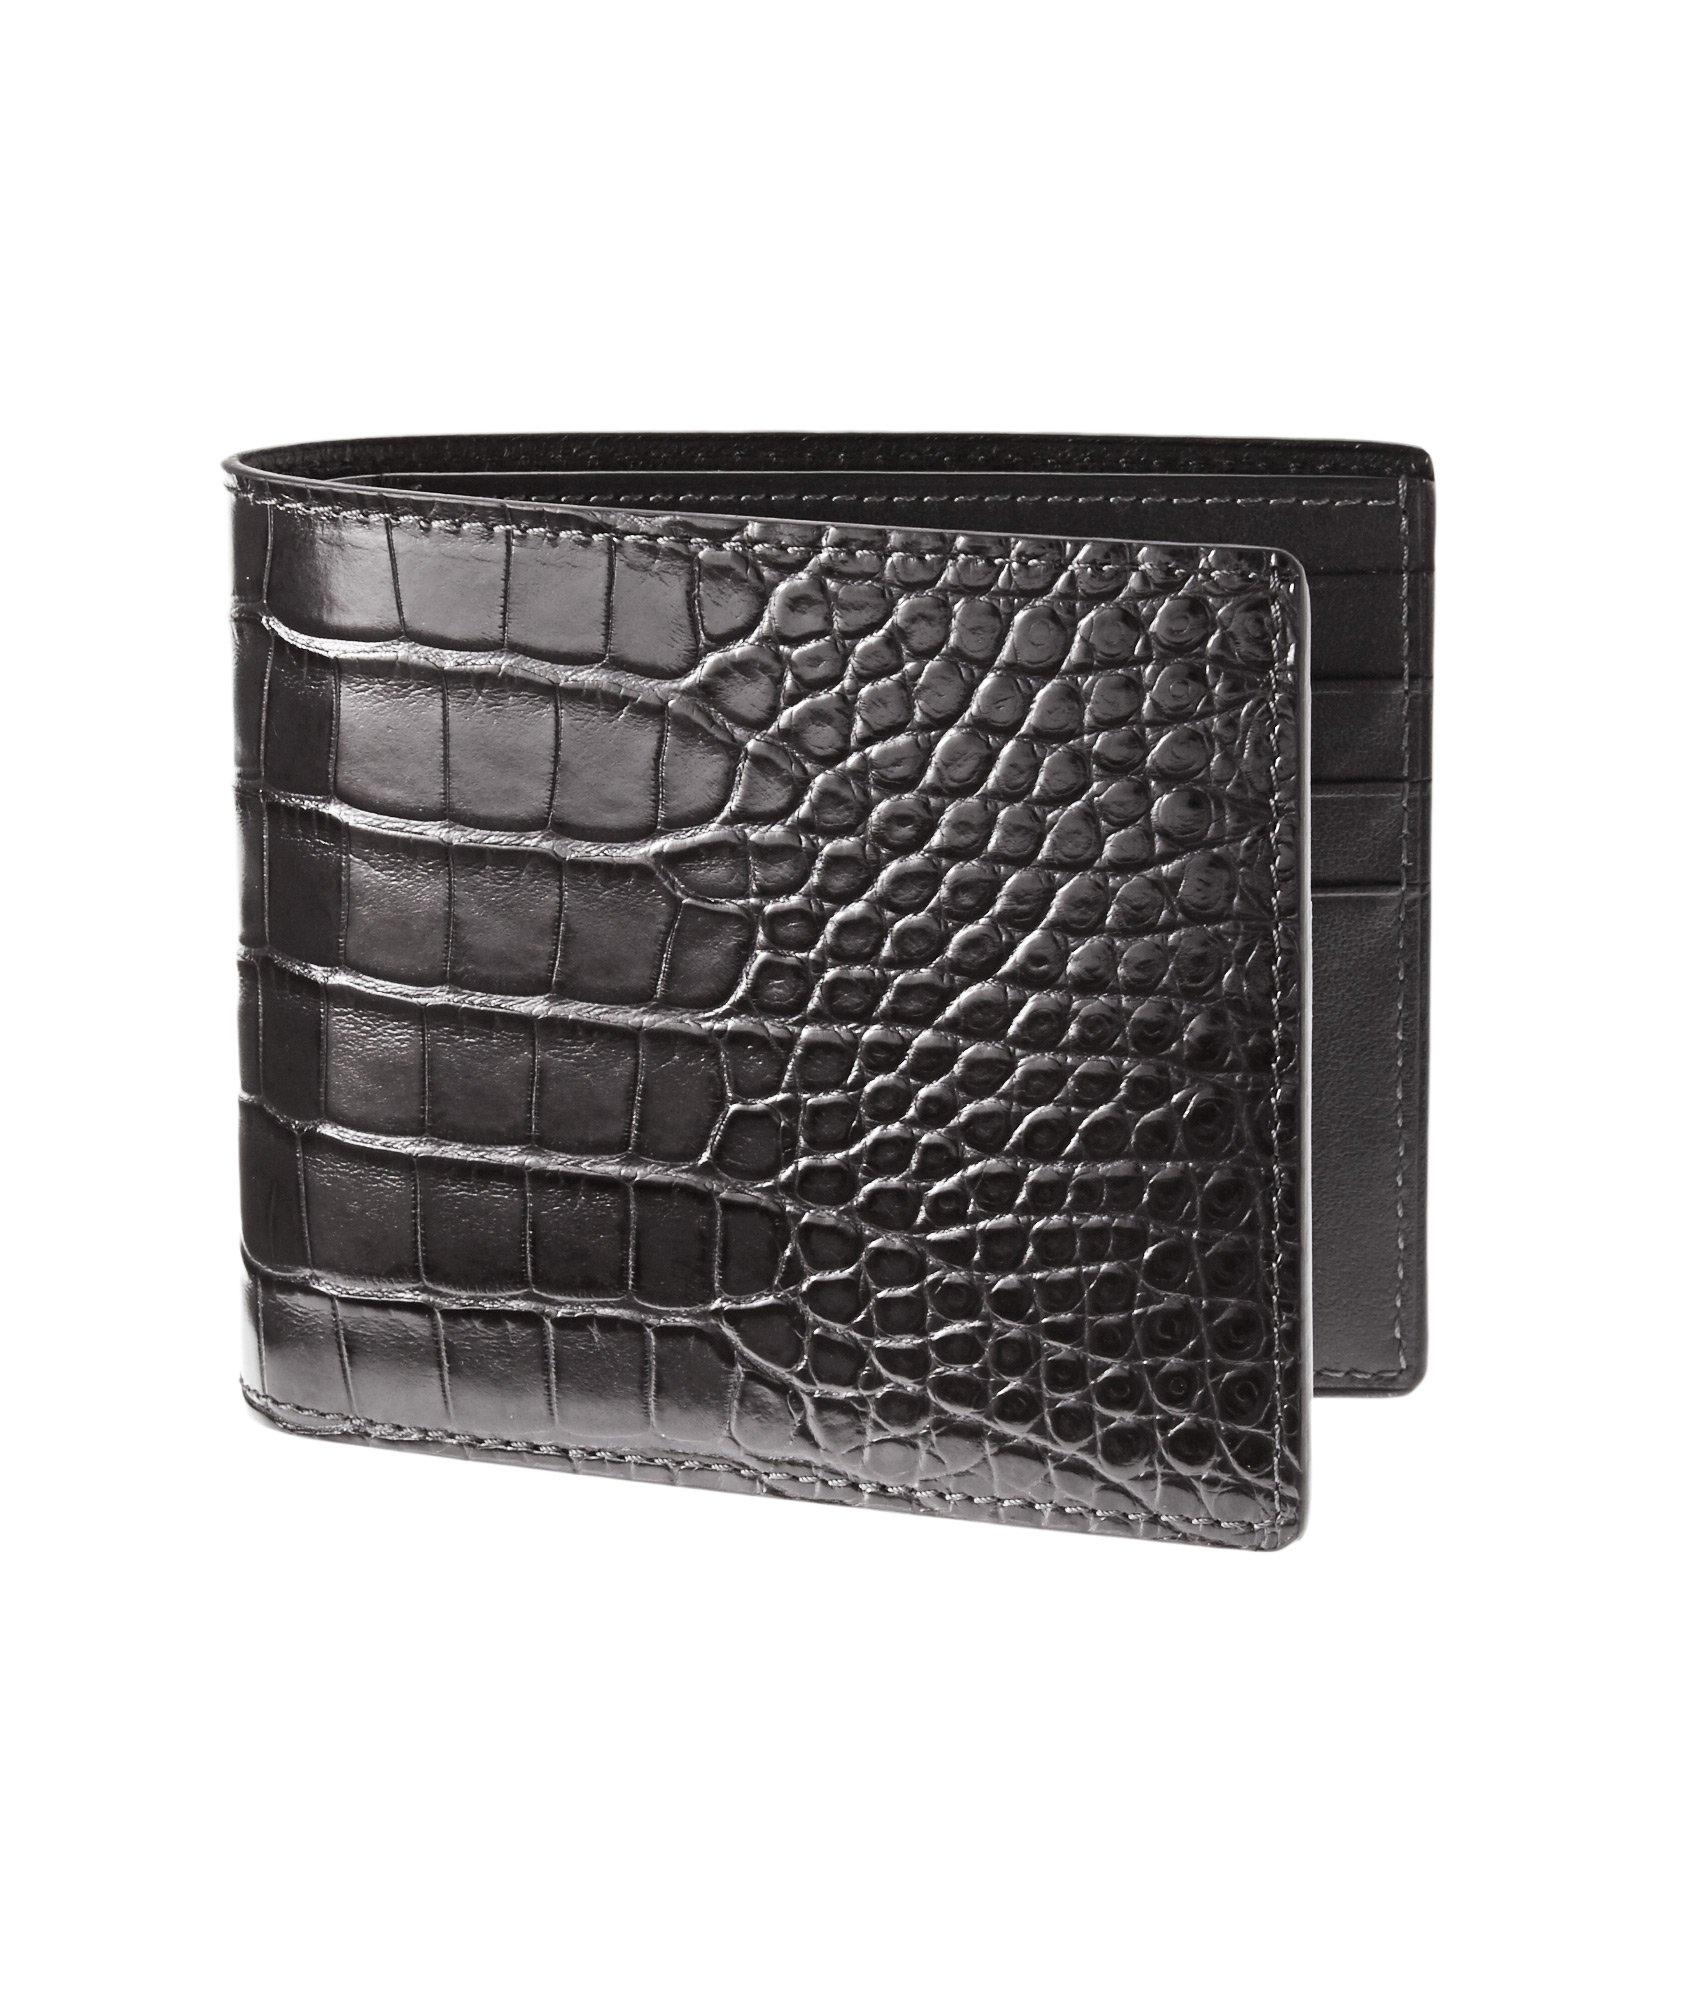 Alligator Leather Wallet image 0